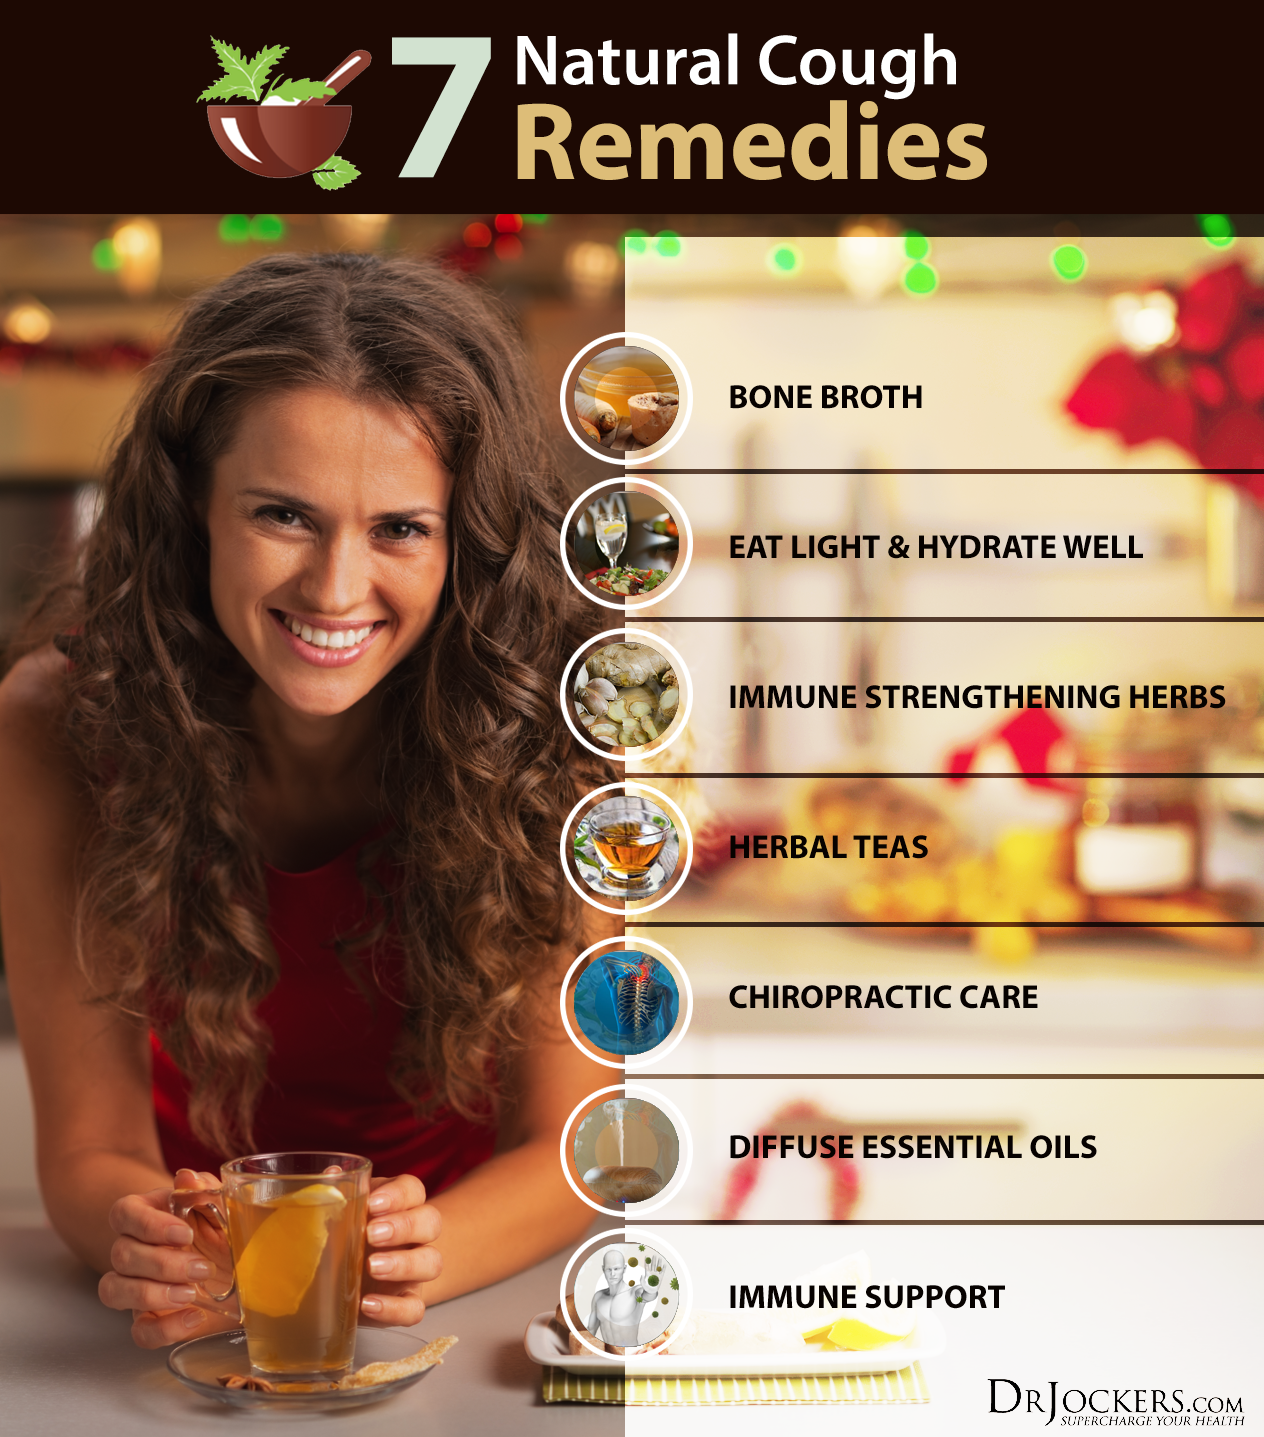 tea tree oil uses, Top 17 Tea Tree Oil Uses and Benefits